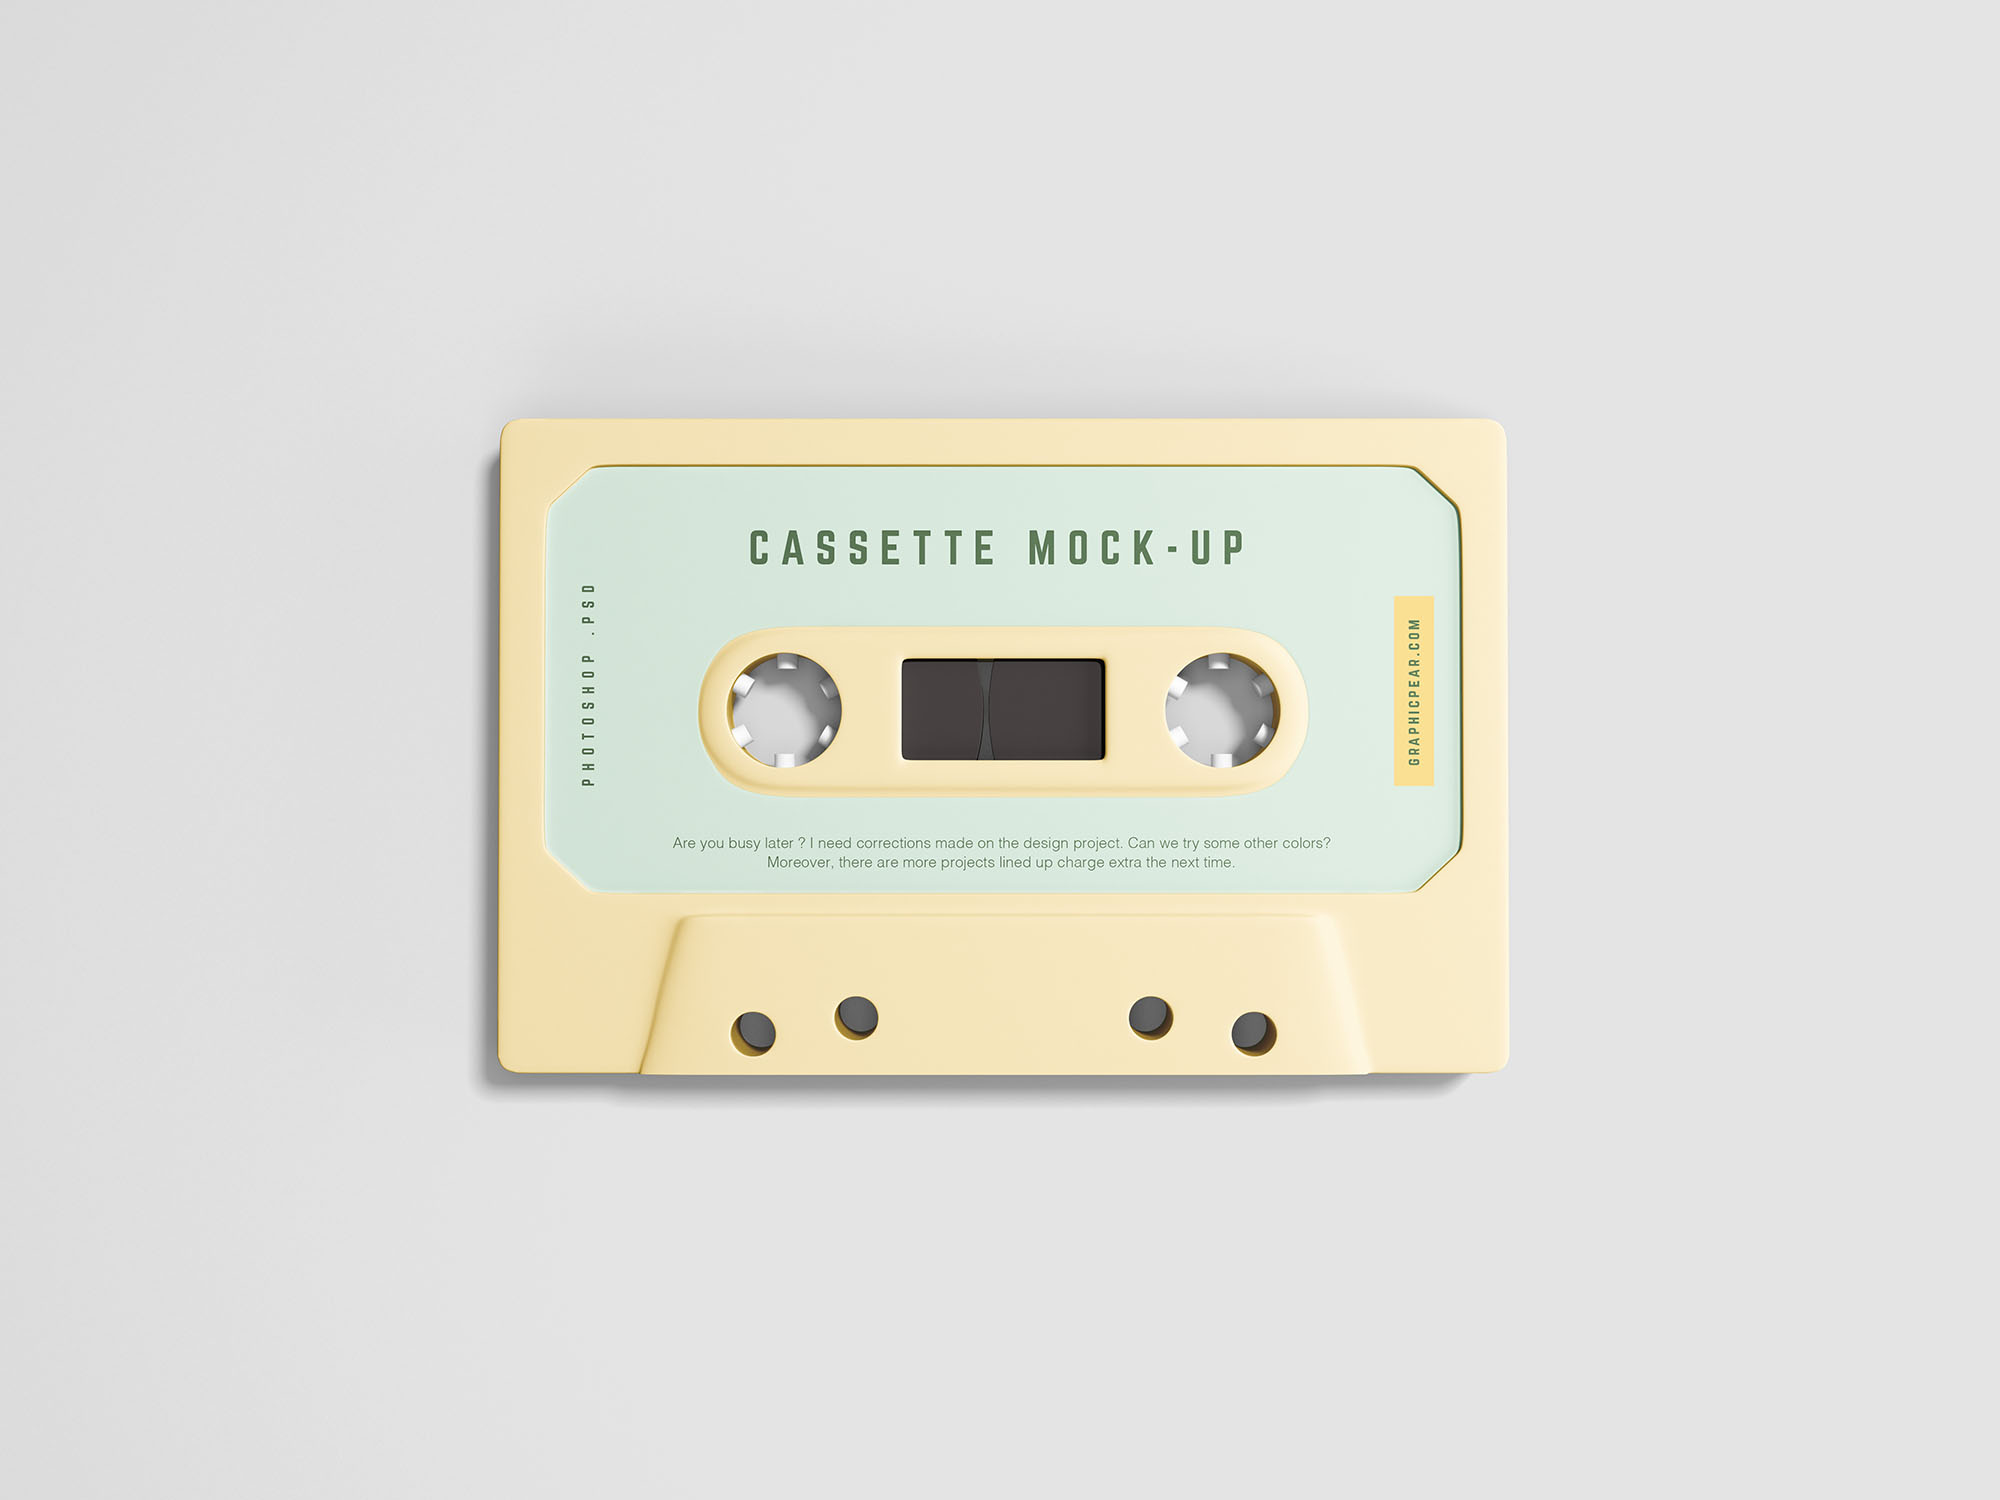 复古音乐磁带外观设计样机模板 Simple Cassette Mockup插图(1)